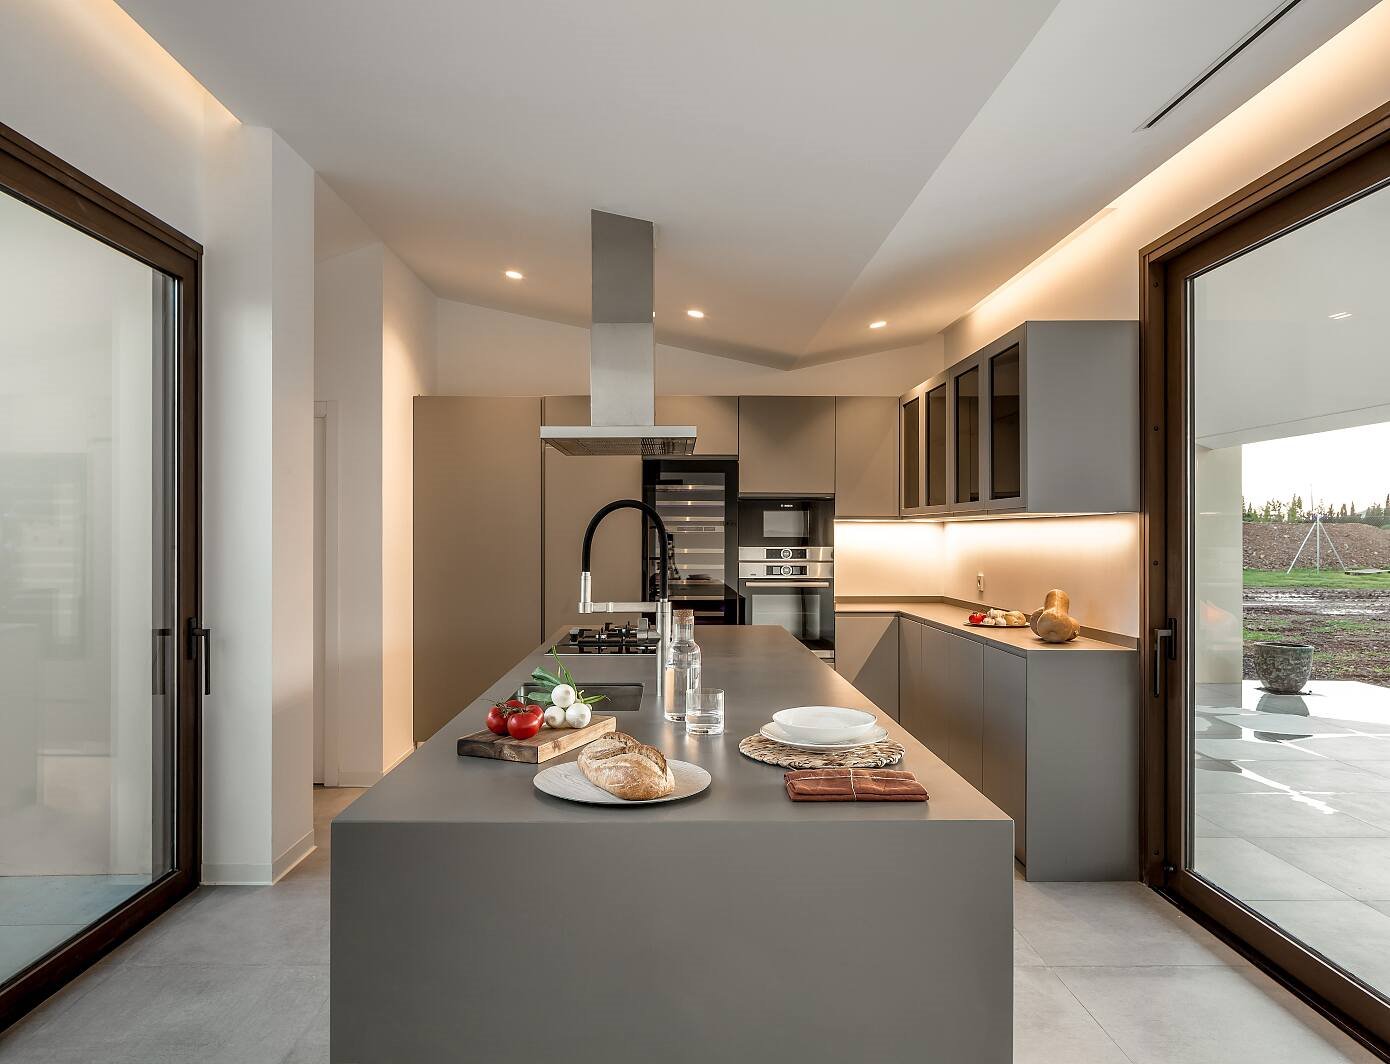 Casa de campo moderna en Mallorca cocina